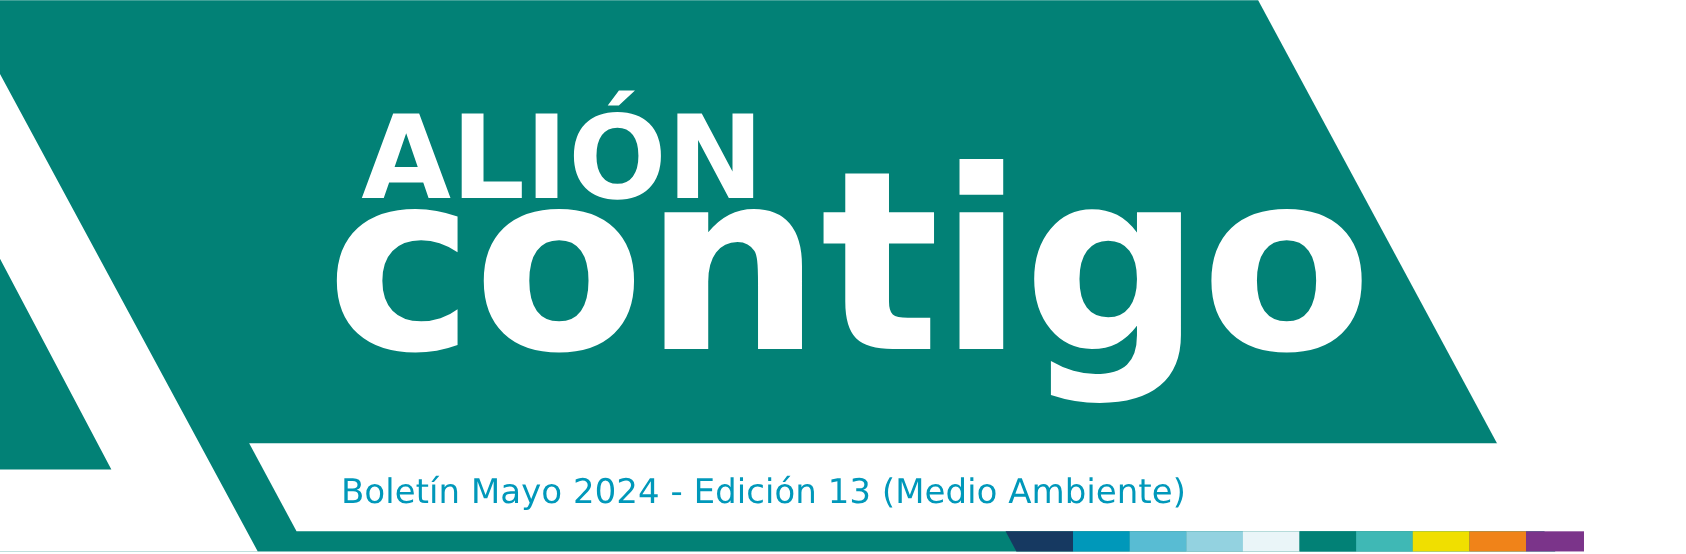 Boletin Mayo 2024 - Edicion 13 (Medio ambiente)